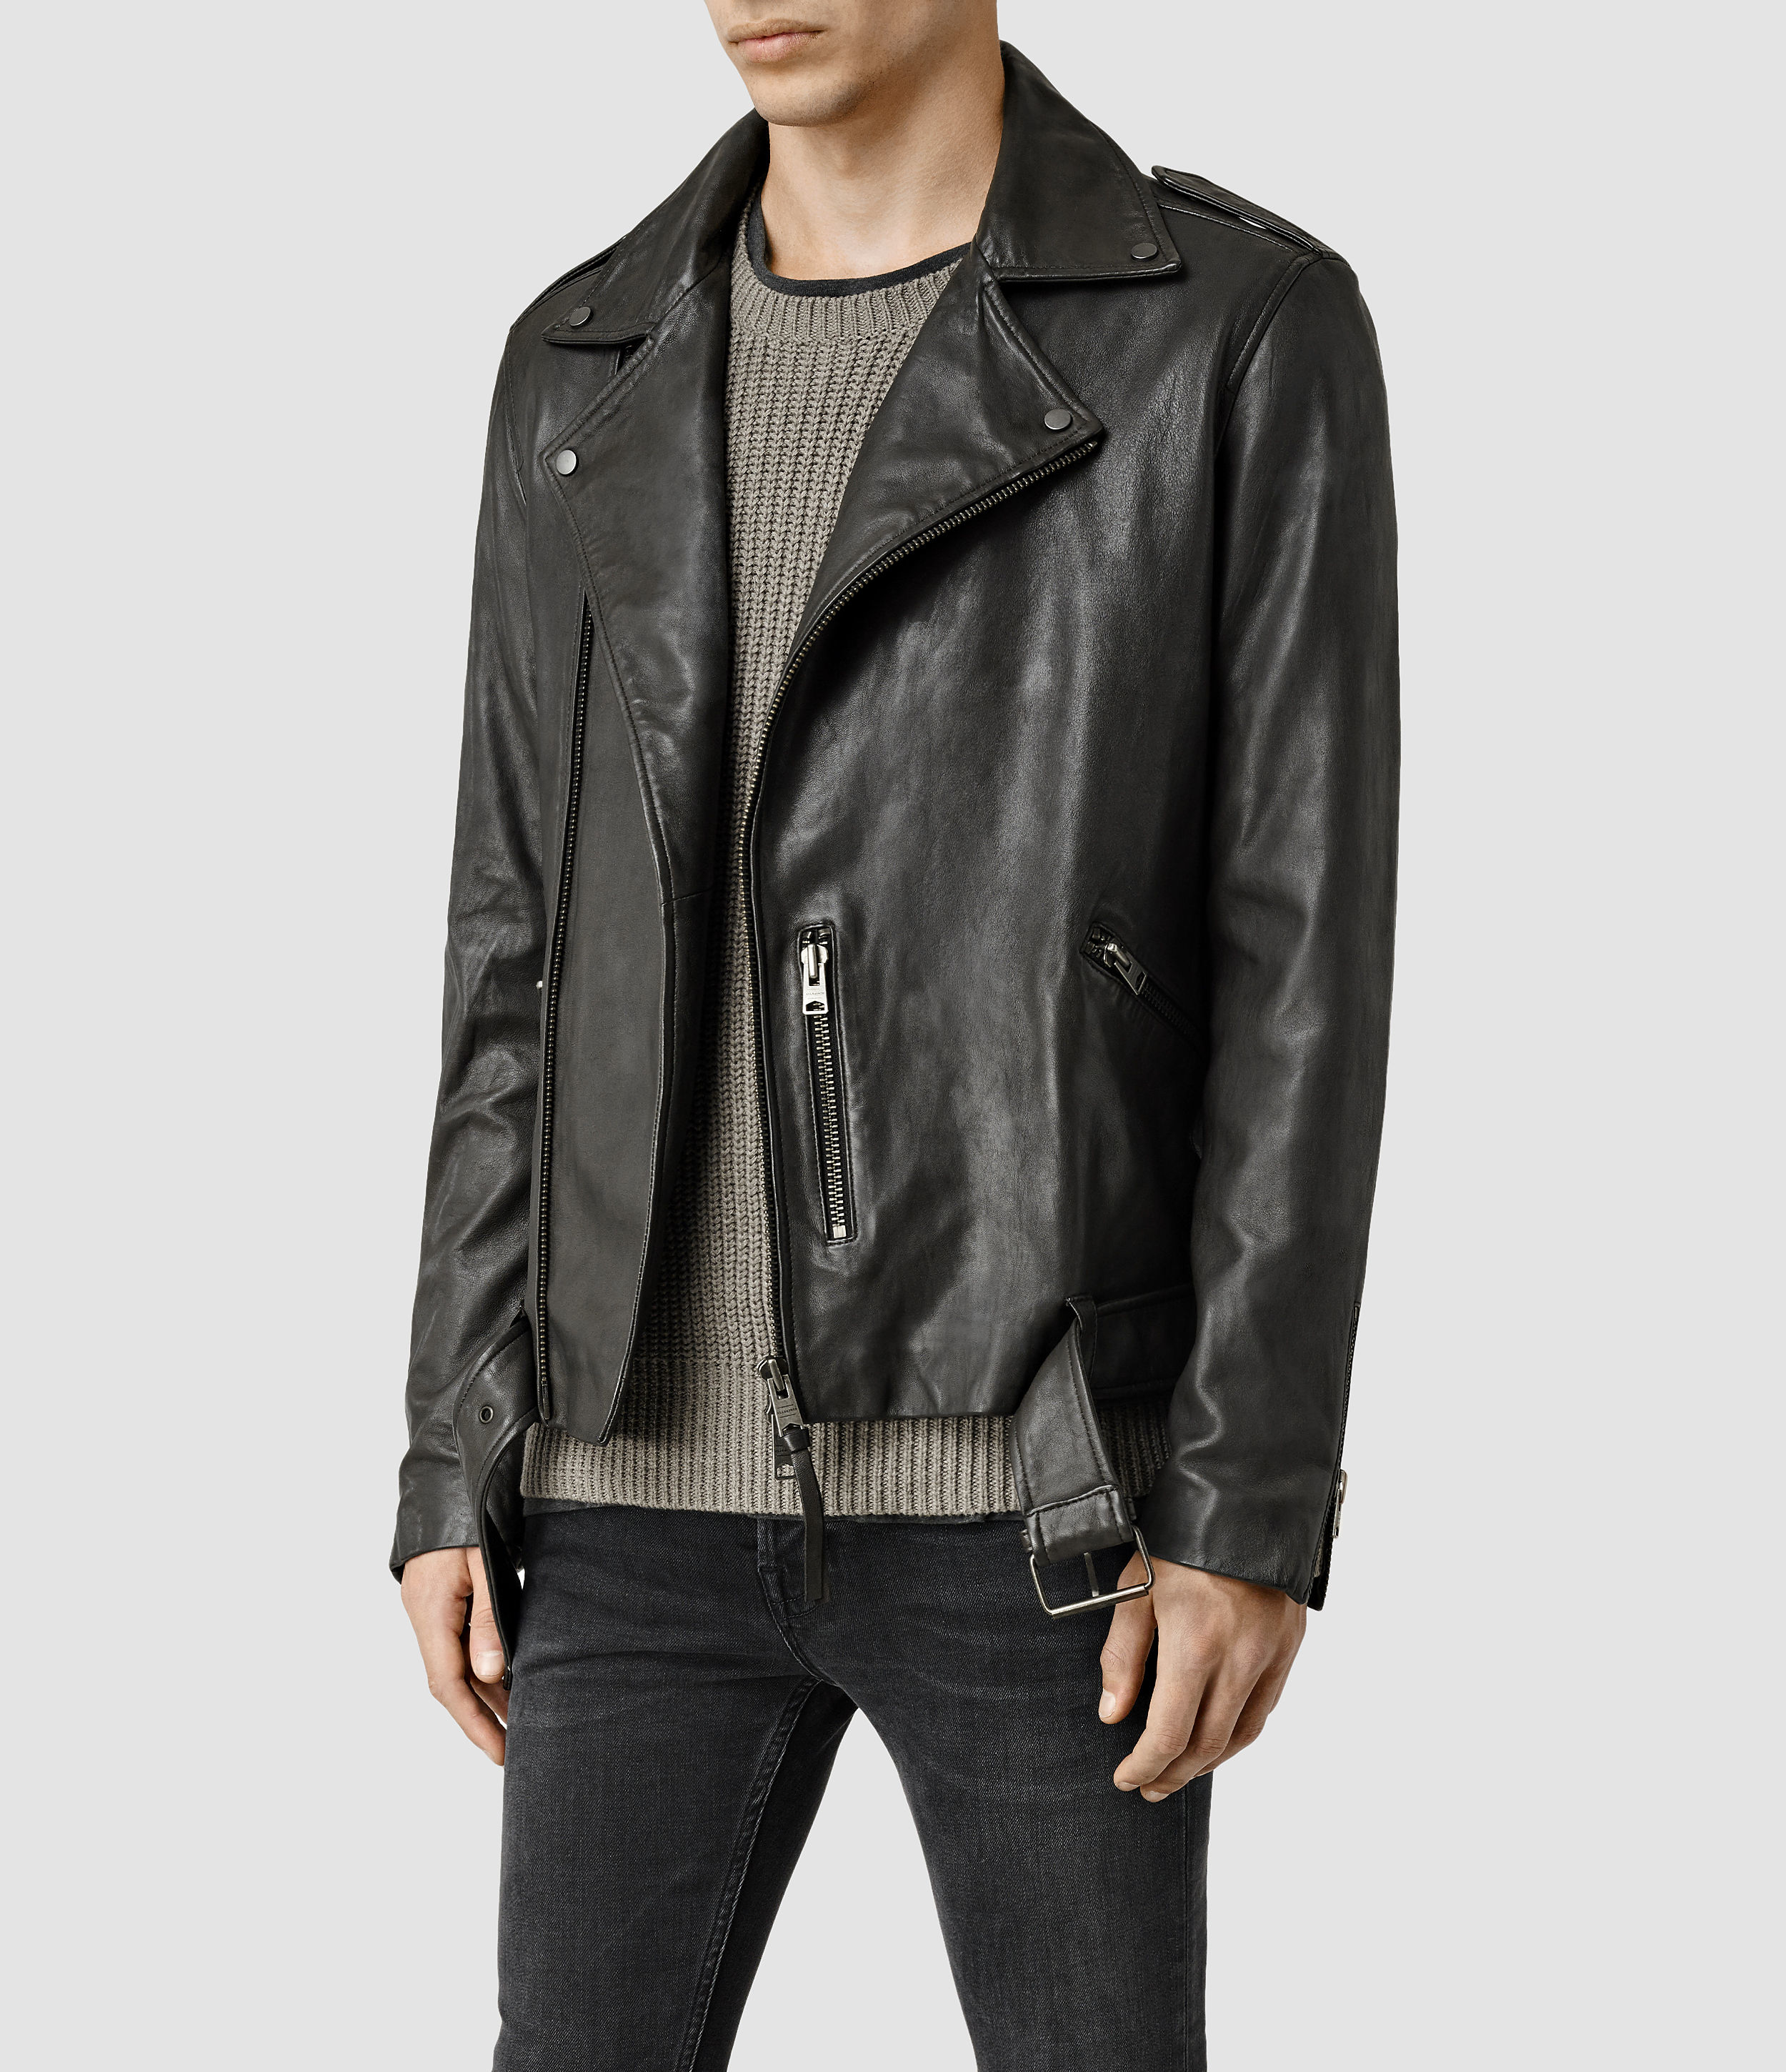 AllSaints Kahawa Leather Biker Jacket in Black (Gray) for Men - Lyst